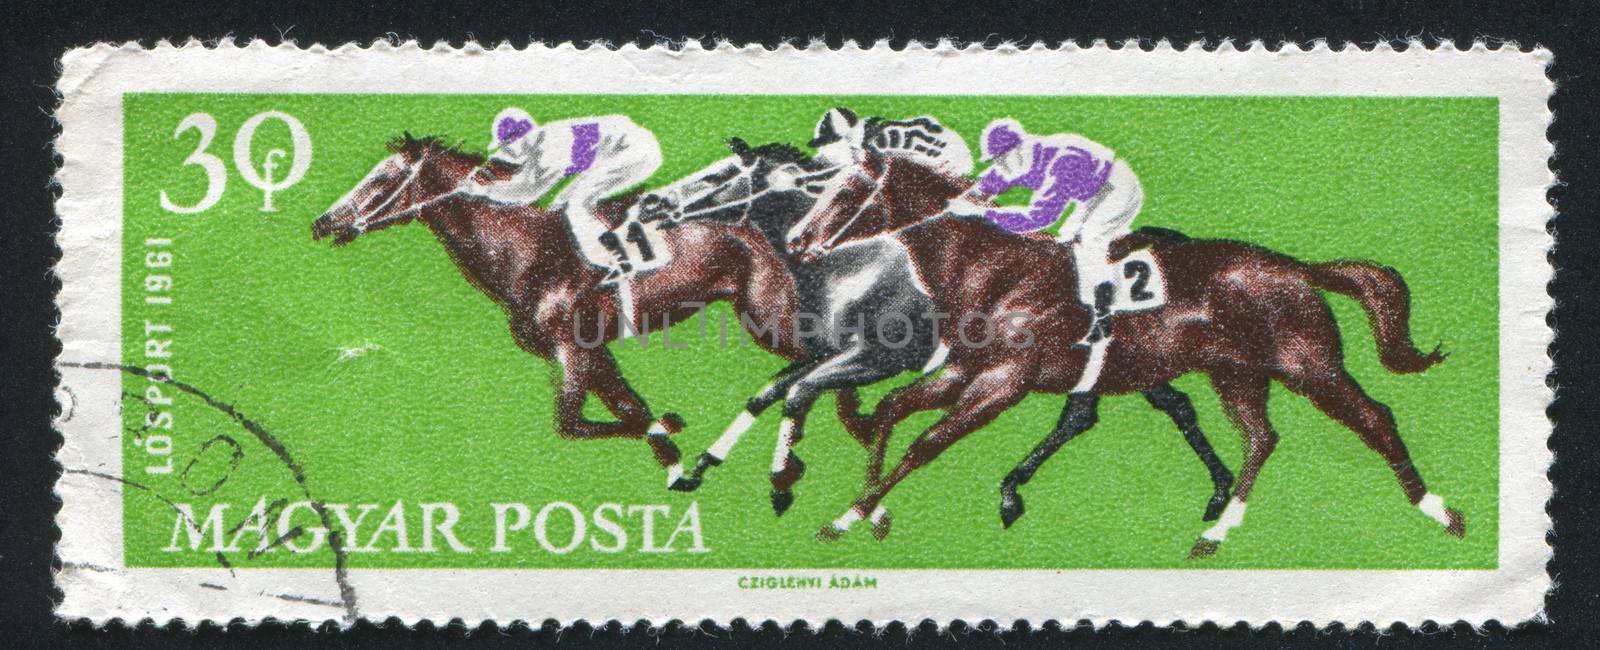 HUNGARY - CIRCA 1961: stamp printed by Hungary, shows Galloping horses, circa 1961